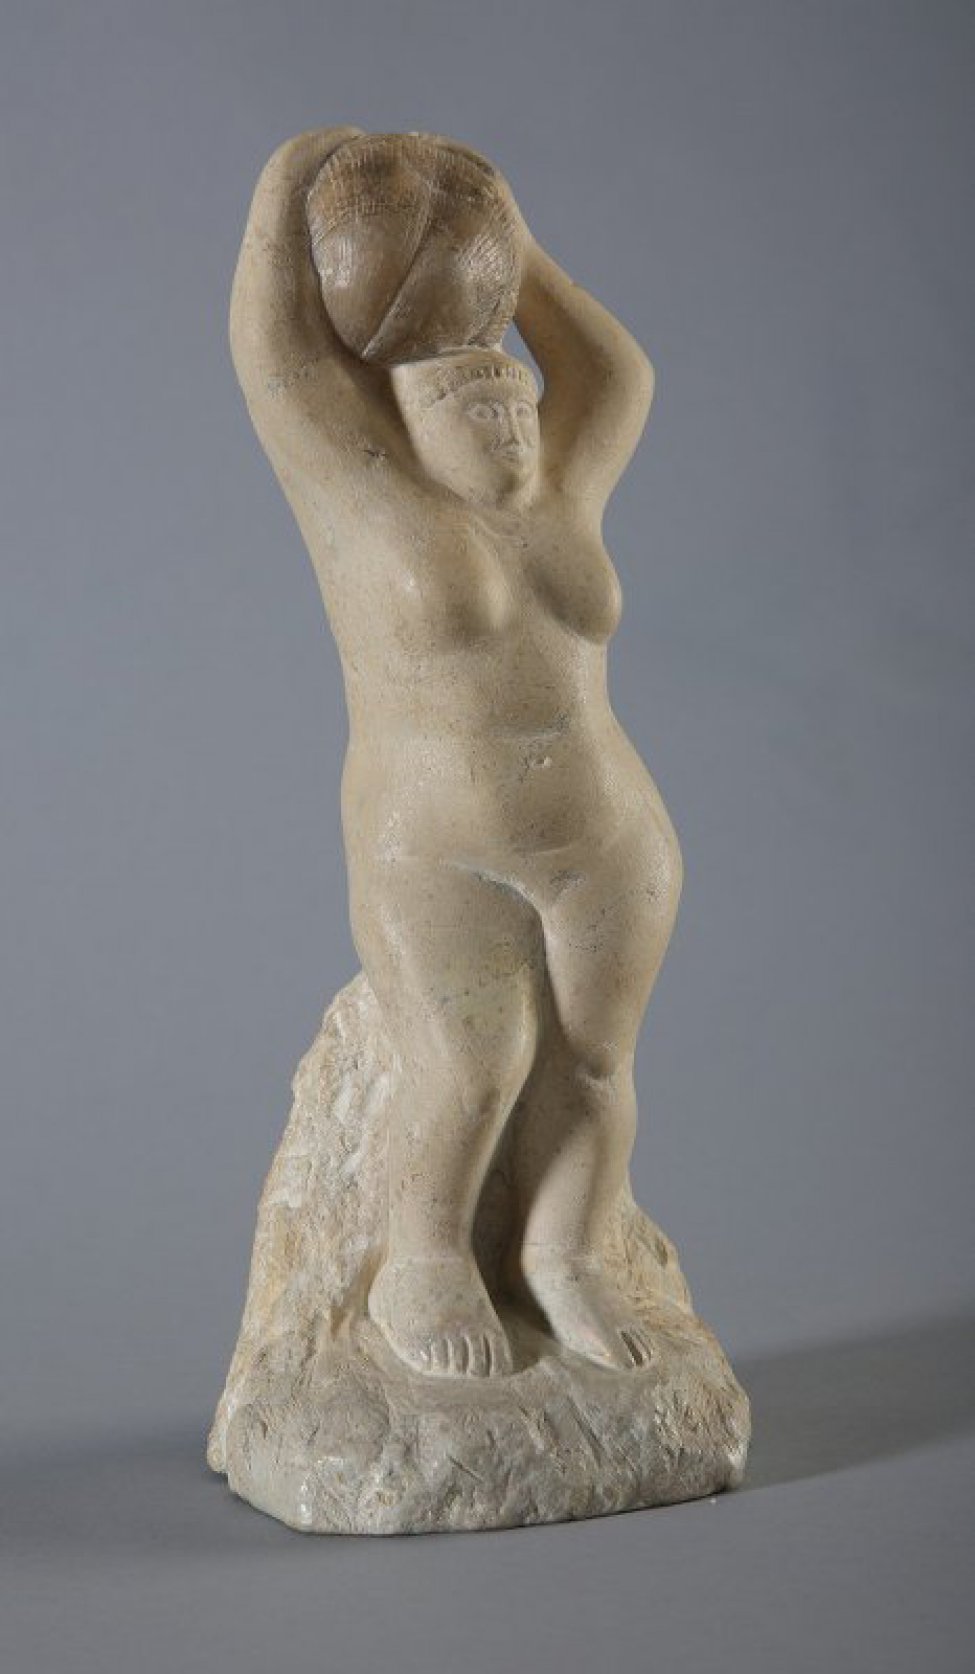 Изображена обнаженная женская фигура в рост, присевшая на камень, играющий роль постамента. Правая нога согнута в колене. На голове обеими руками держит камень с отпечатком раковины - аммонит.